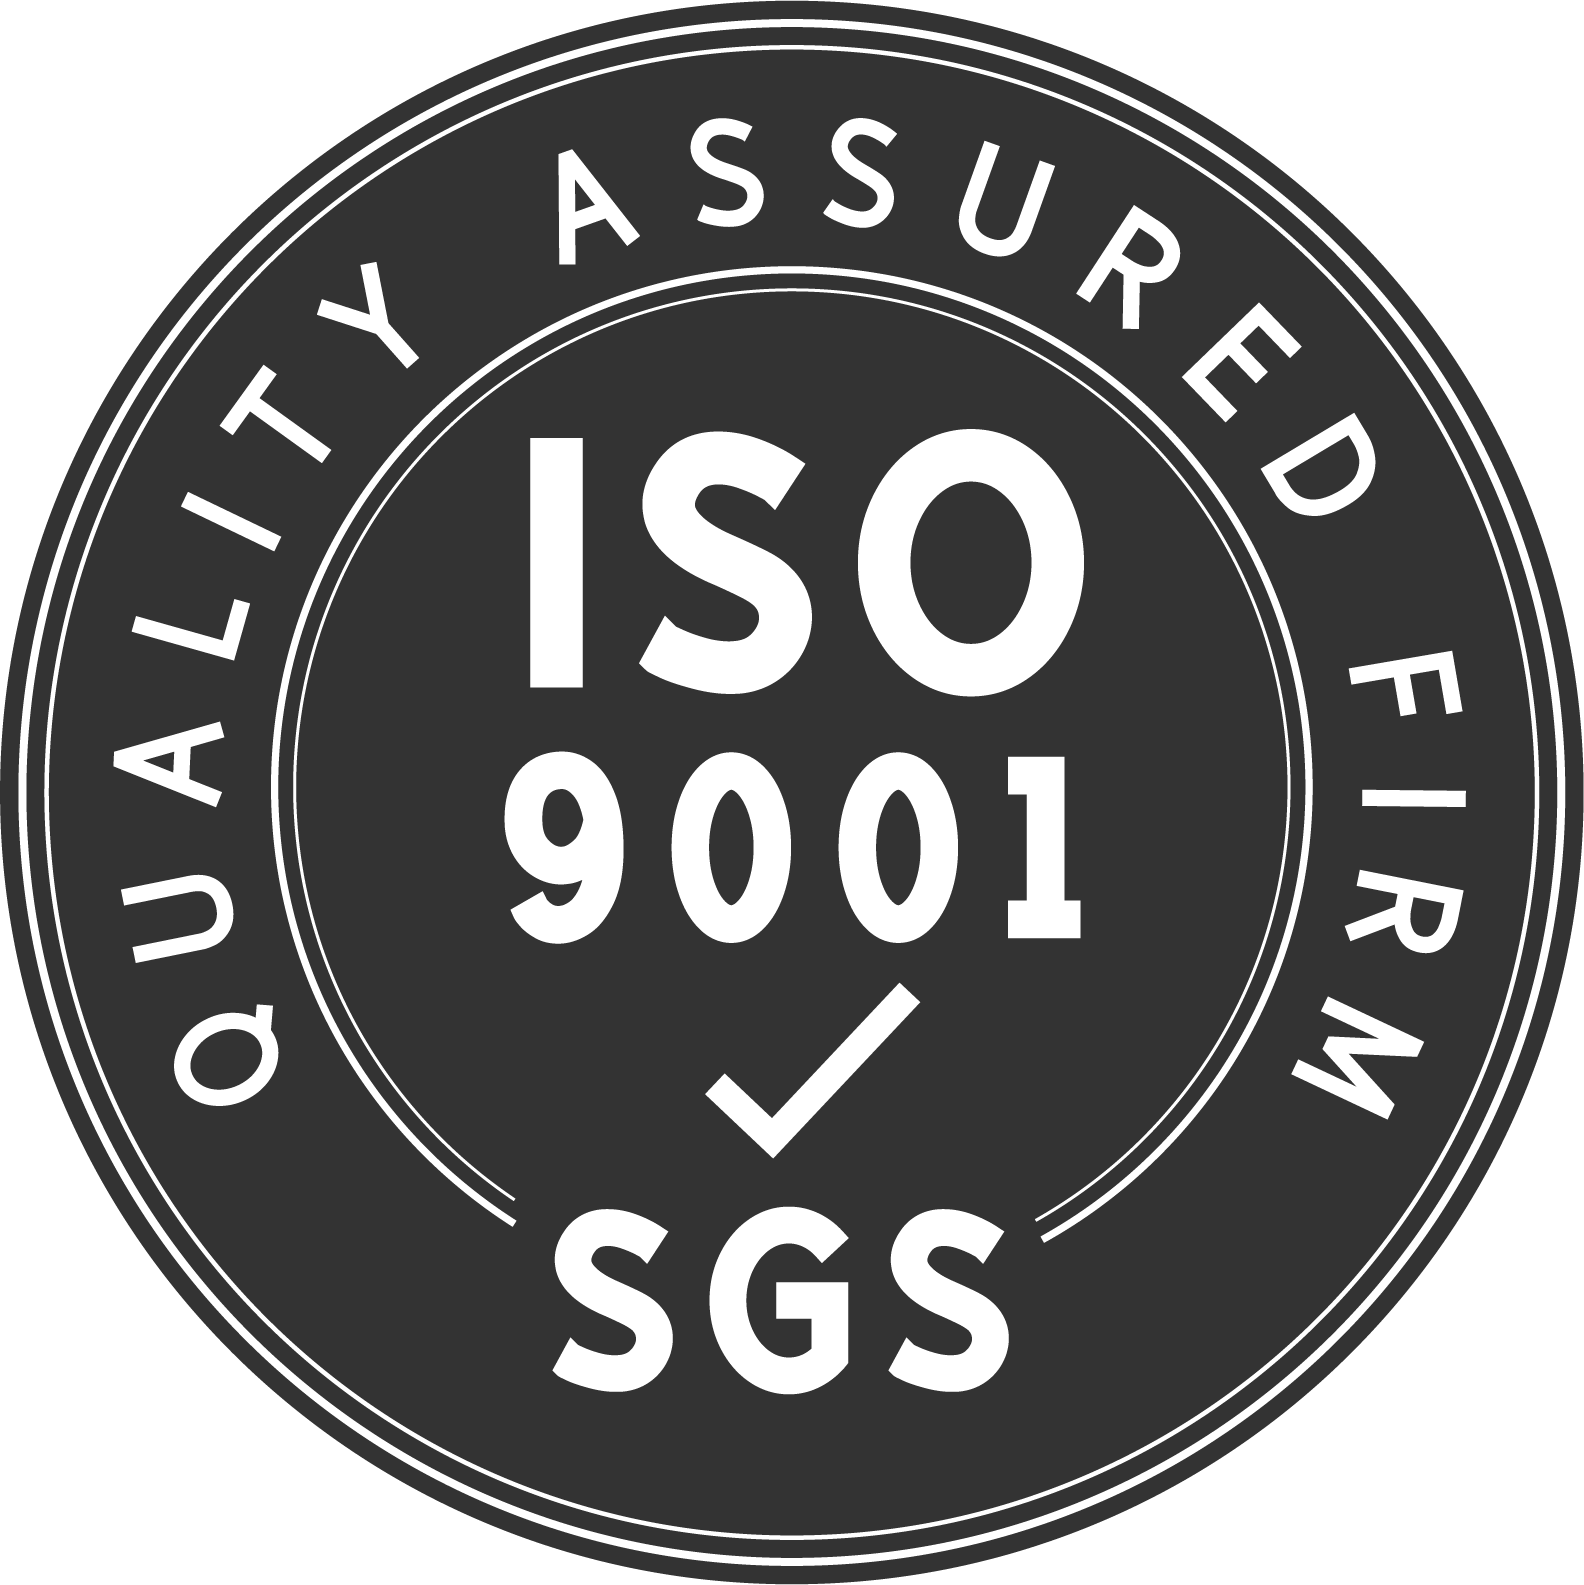 Nossa fábrica é fabricante certificada ISO9001:2005 de produtos de alta qualidade